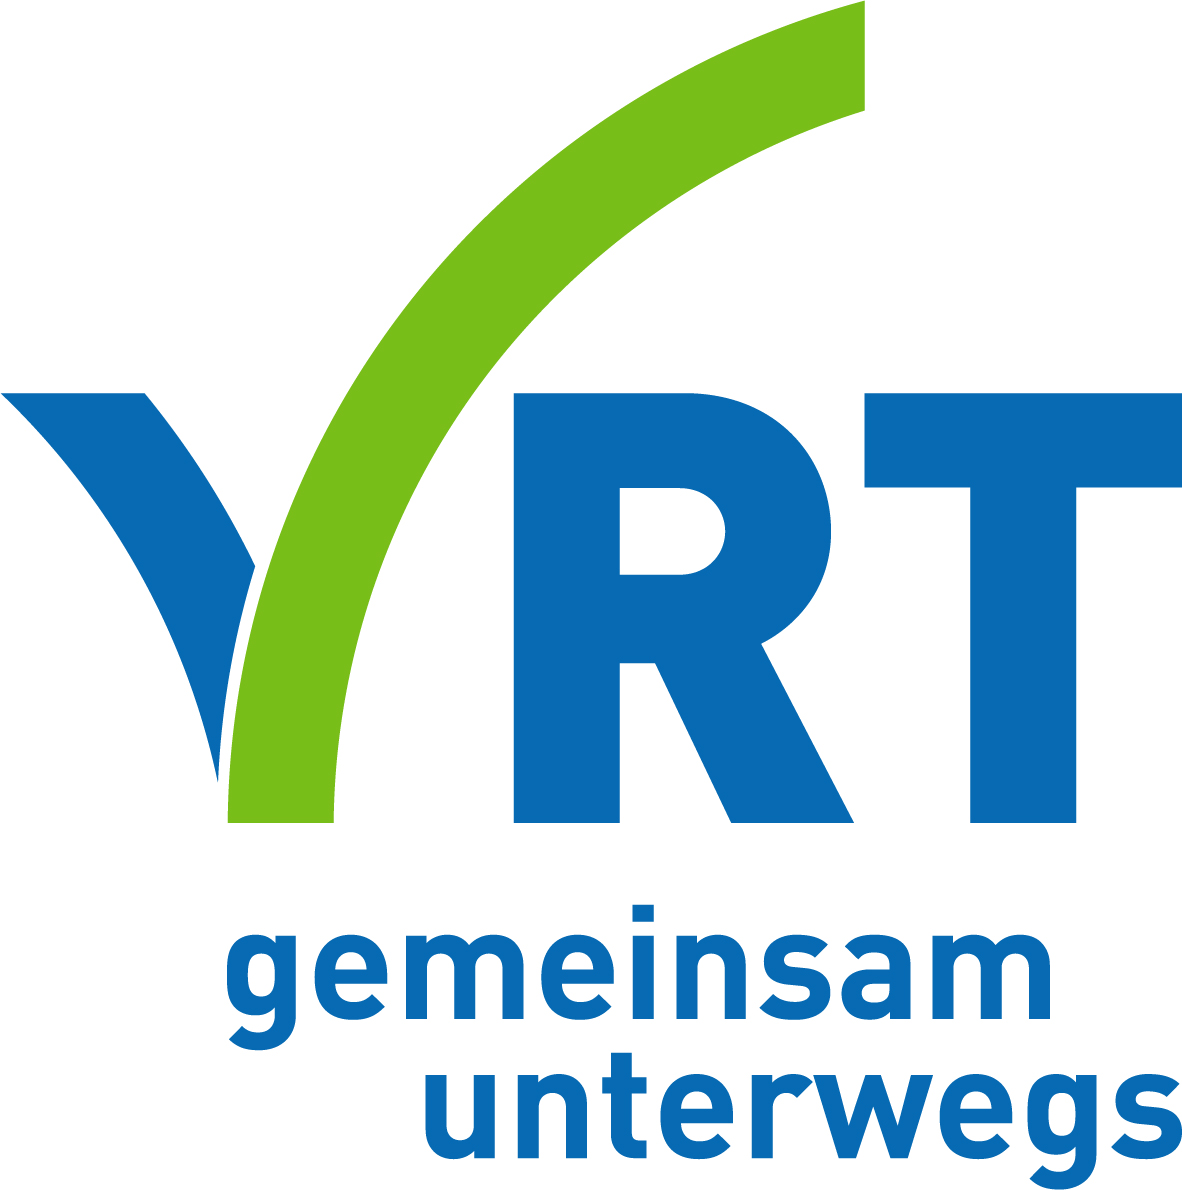 Logo Verkehrsverbund Region Trier GmbH